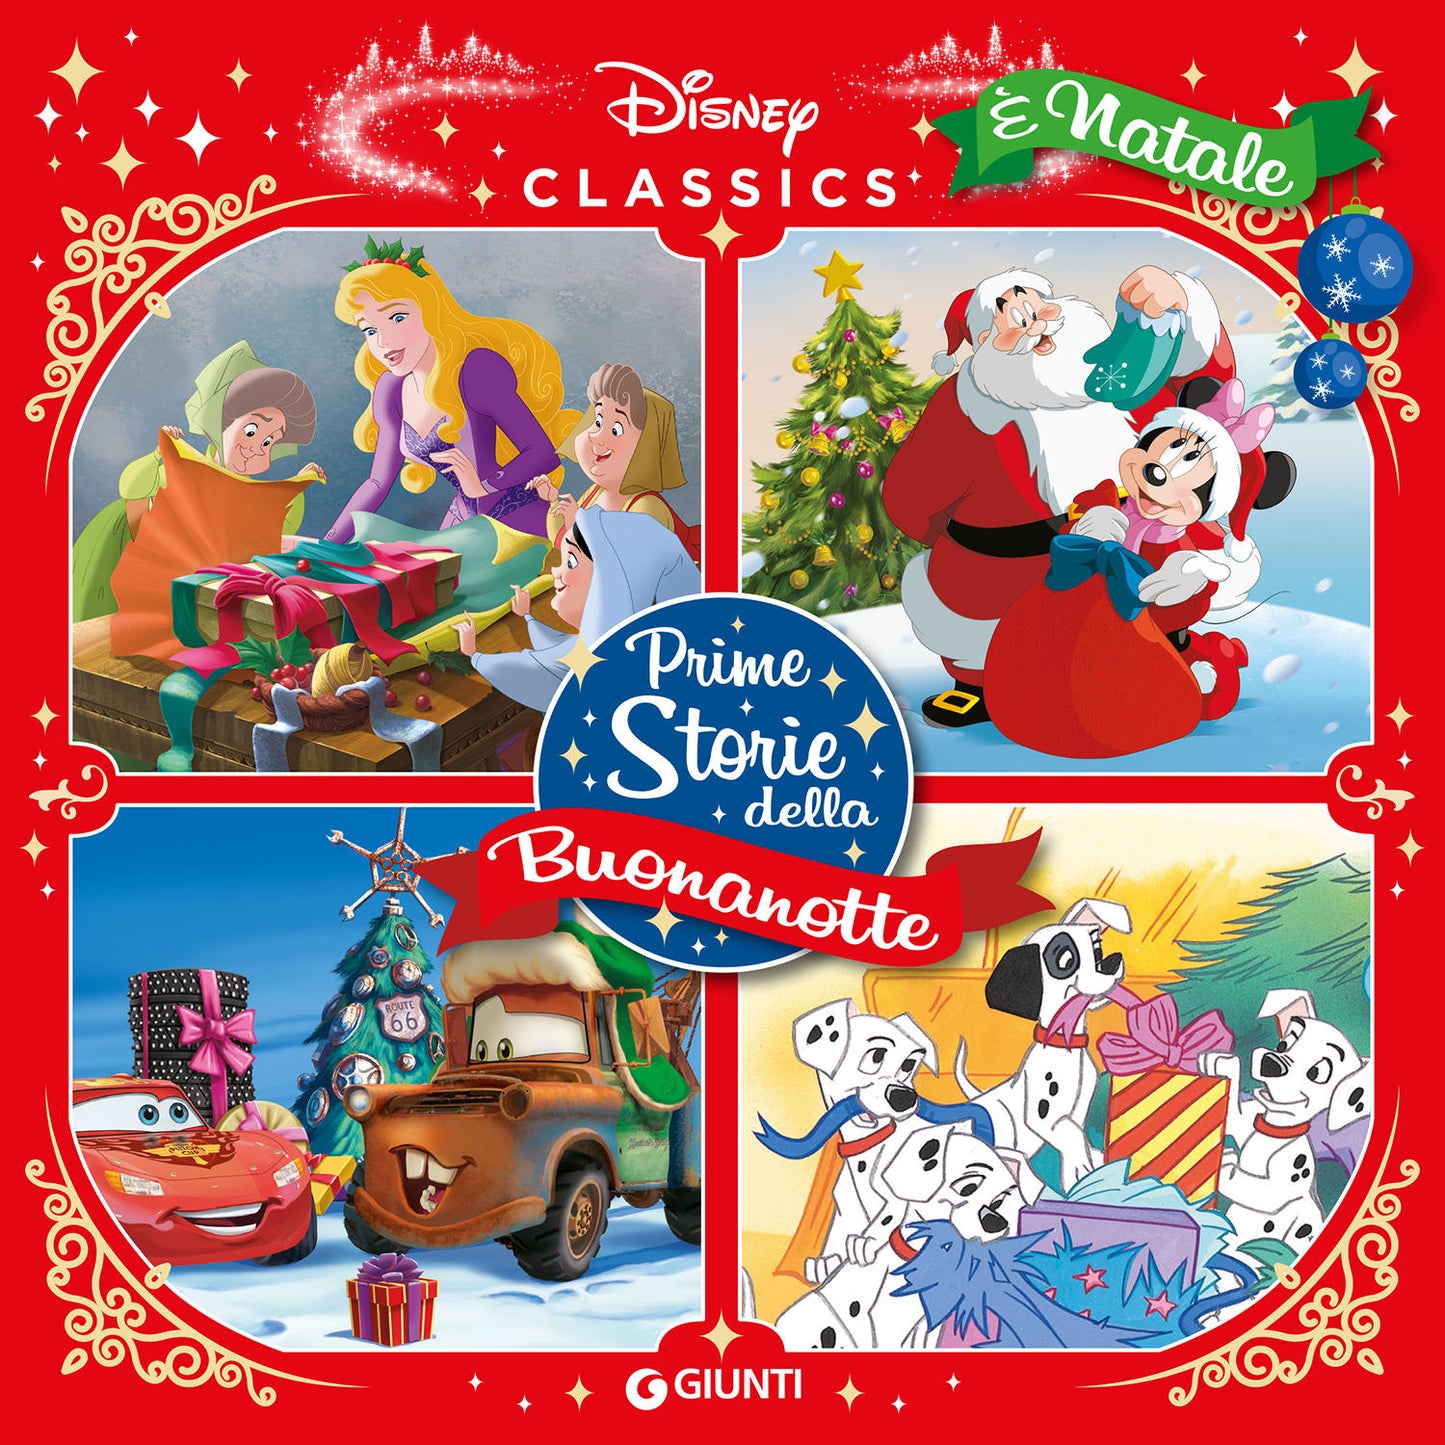 E' Natale Prime storie della buonanotte - Disney classics